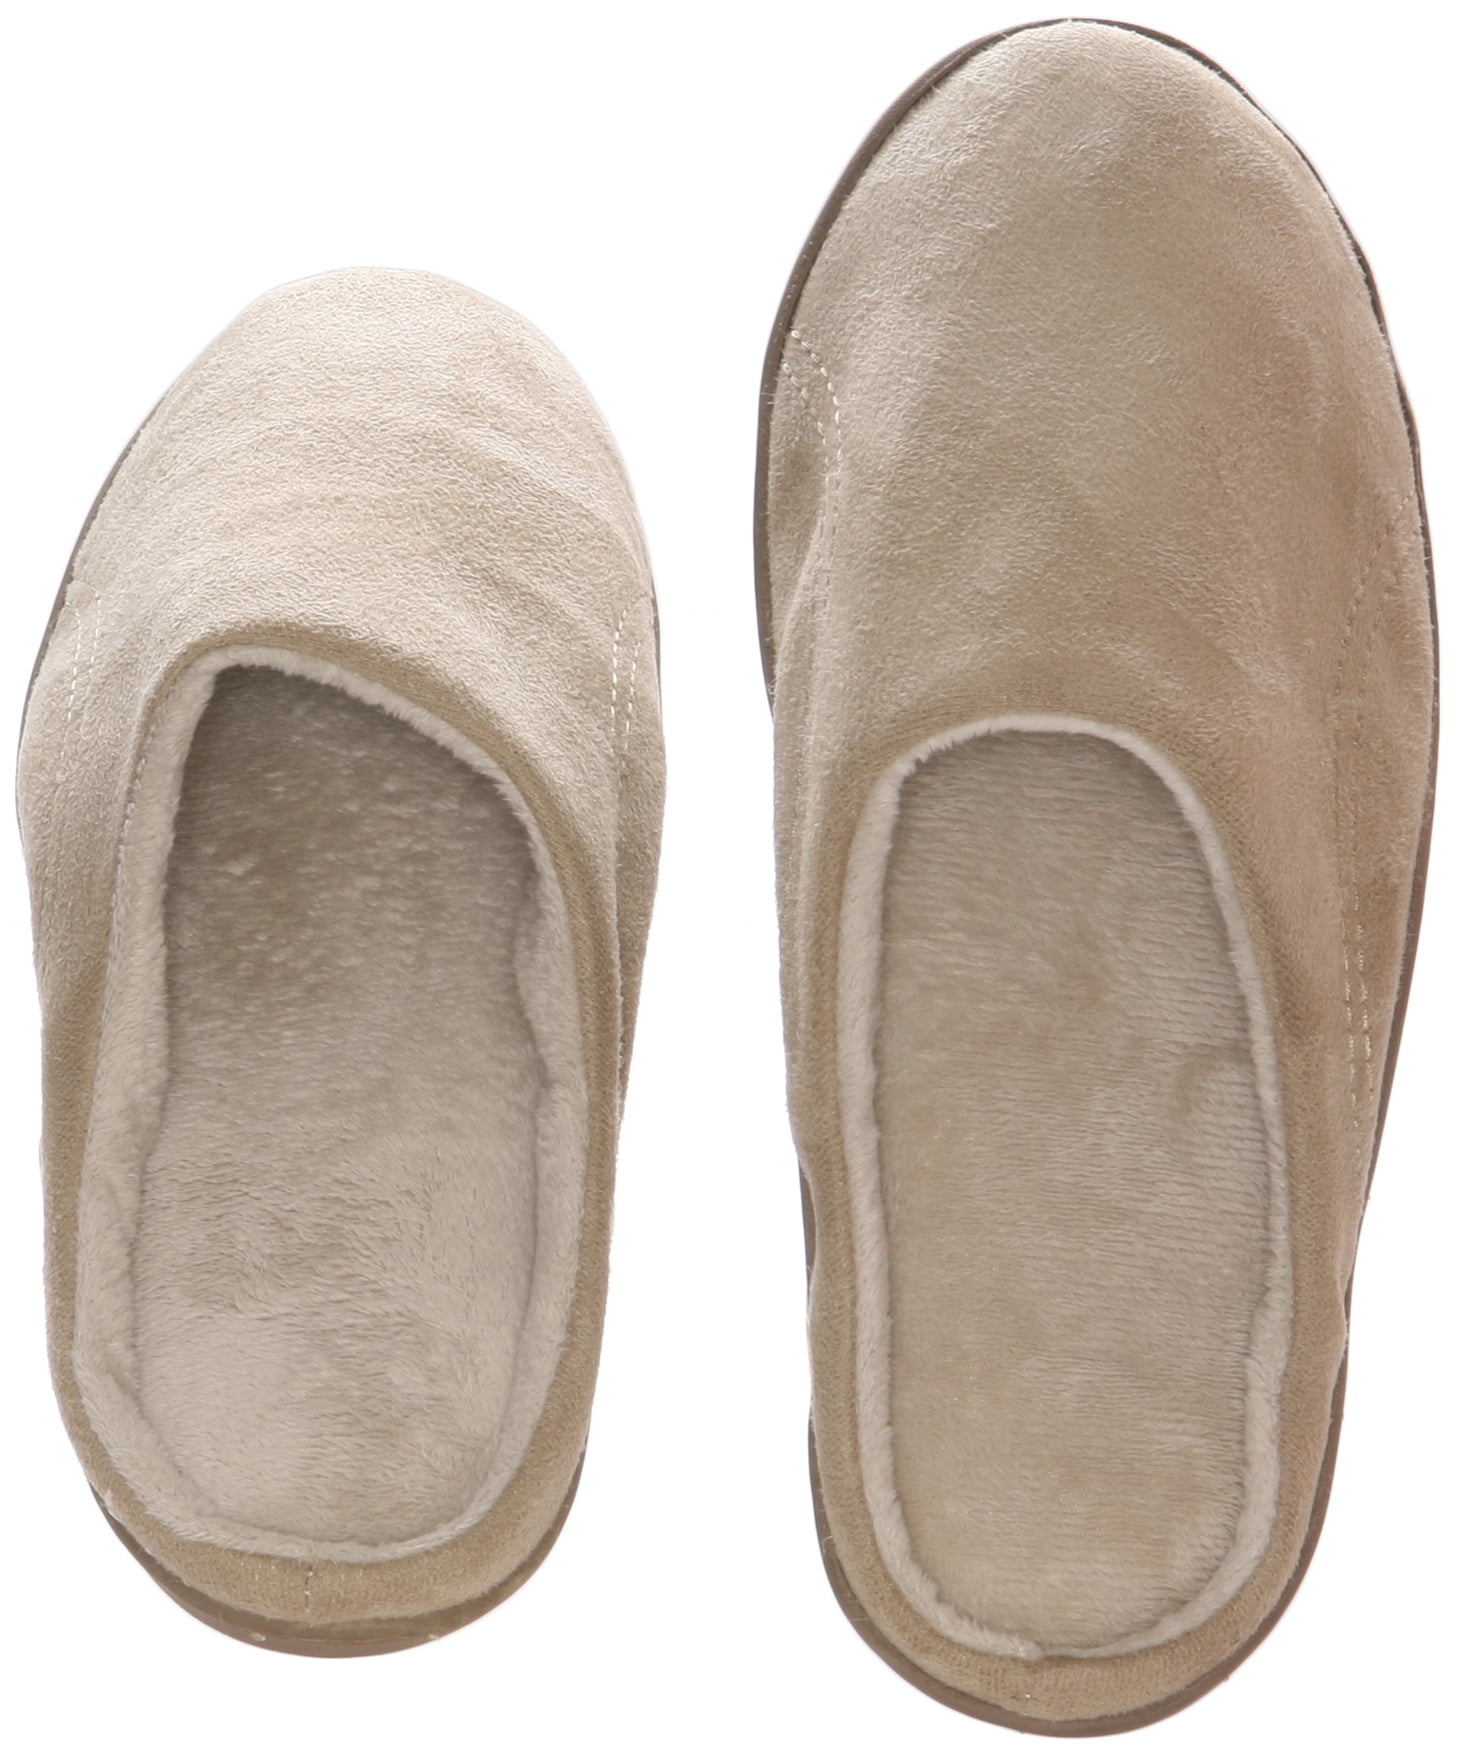 bearpaw men's joshua slippers